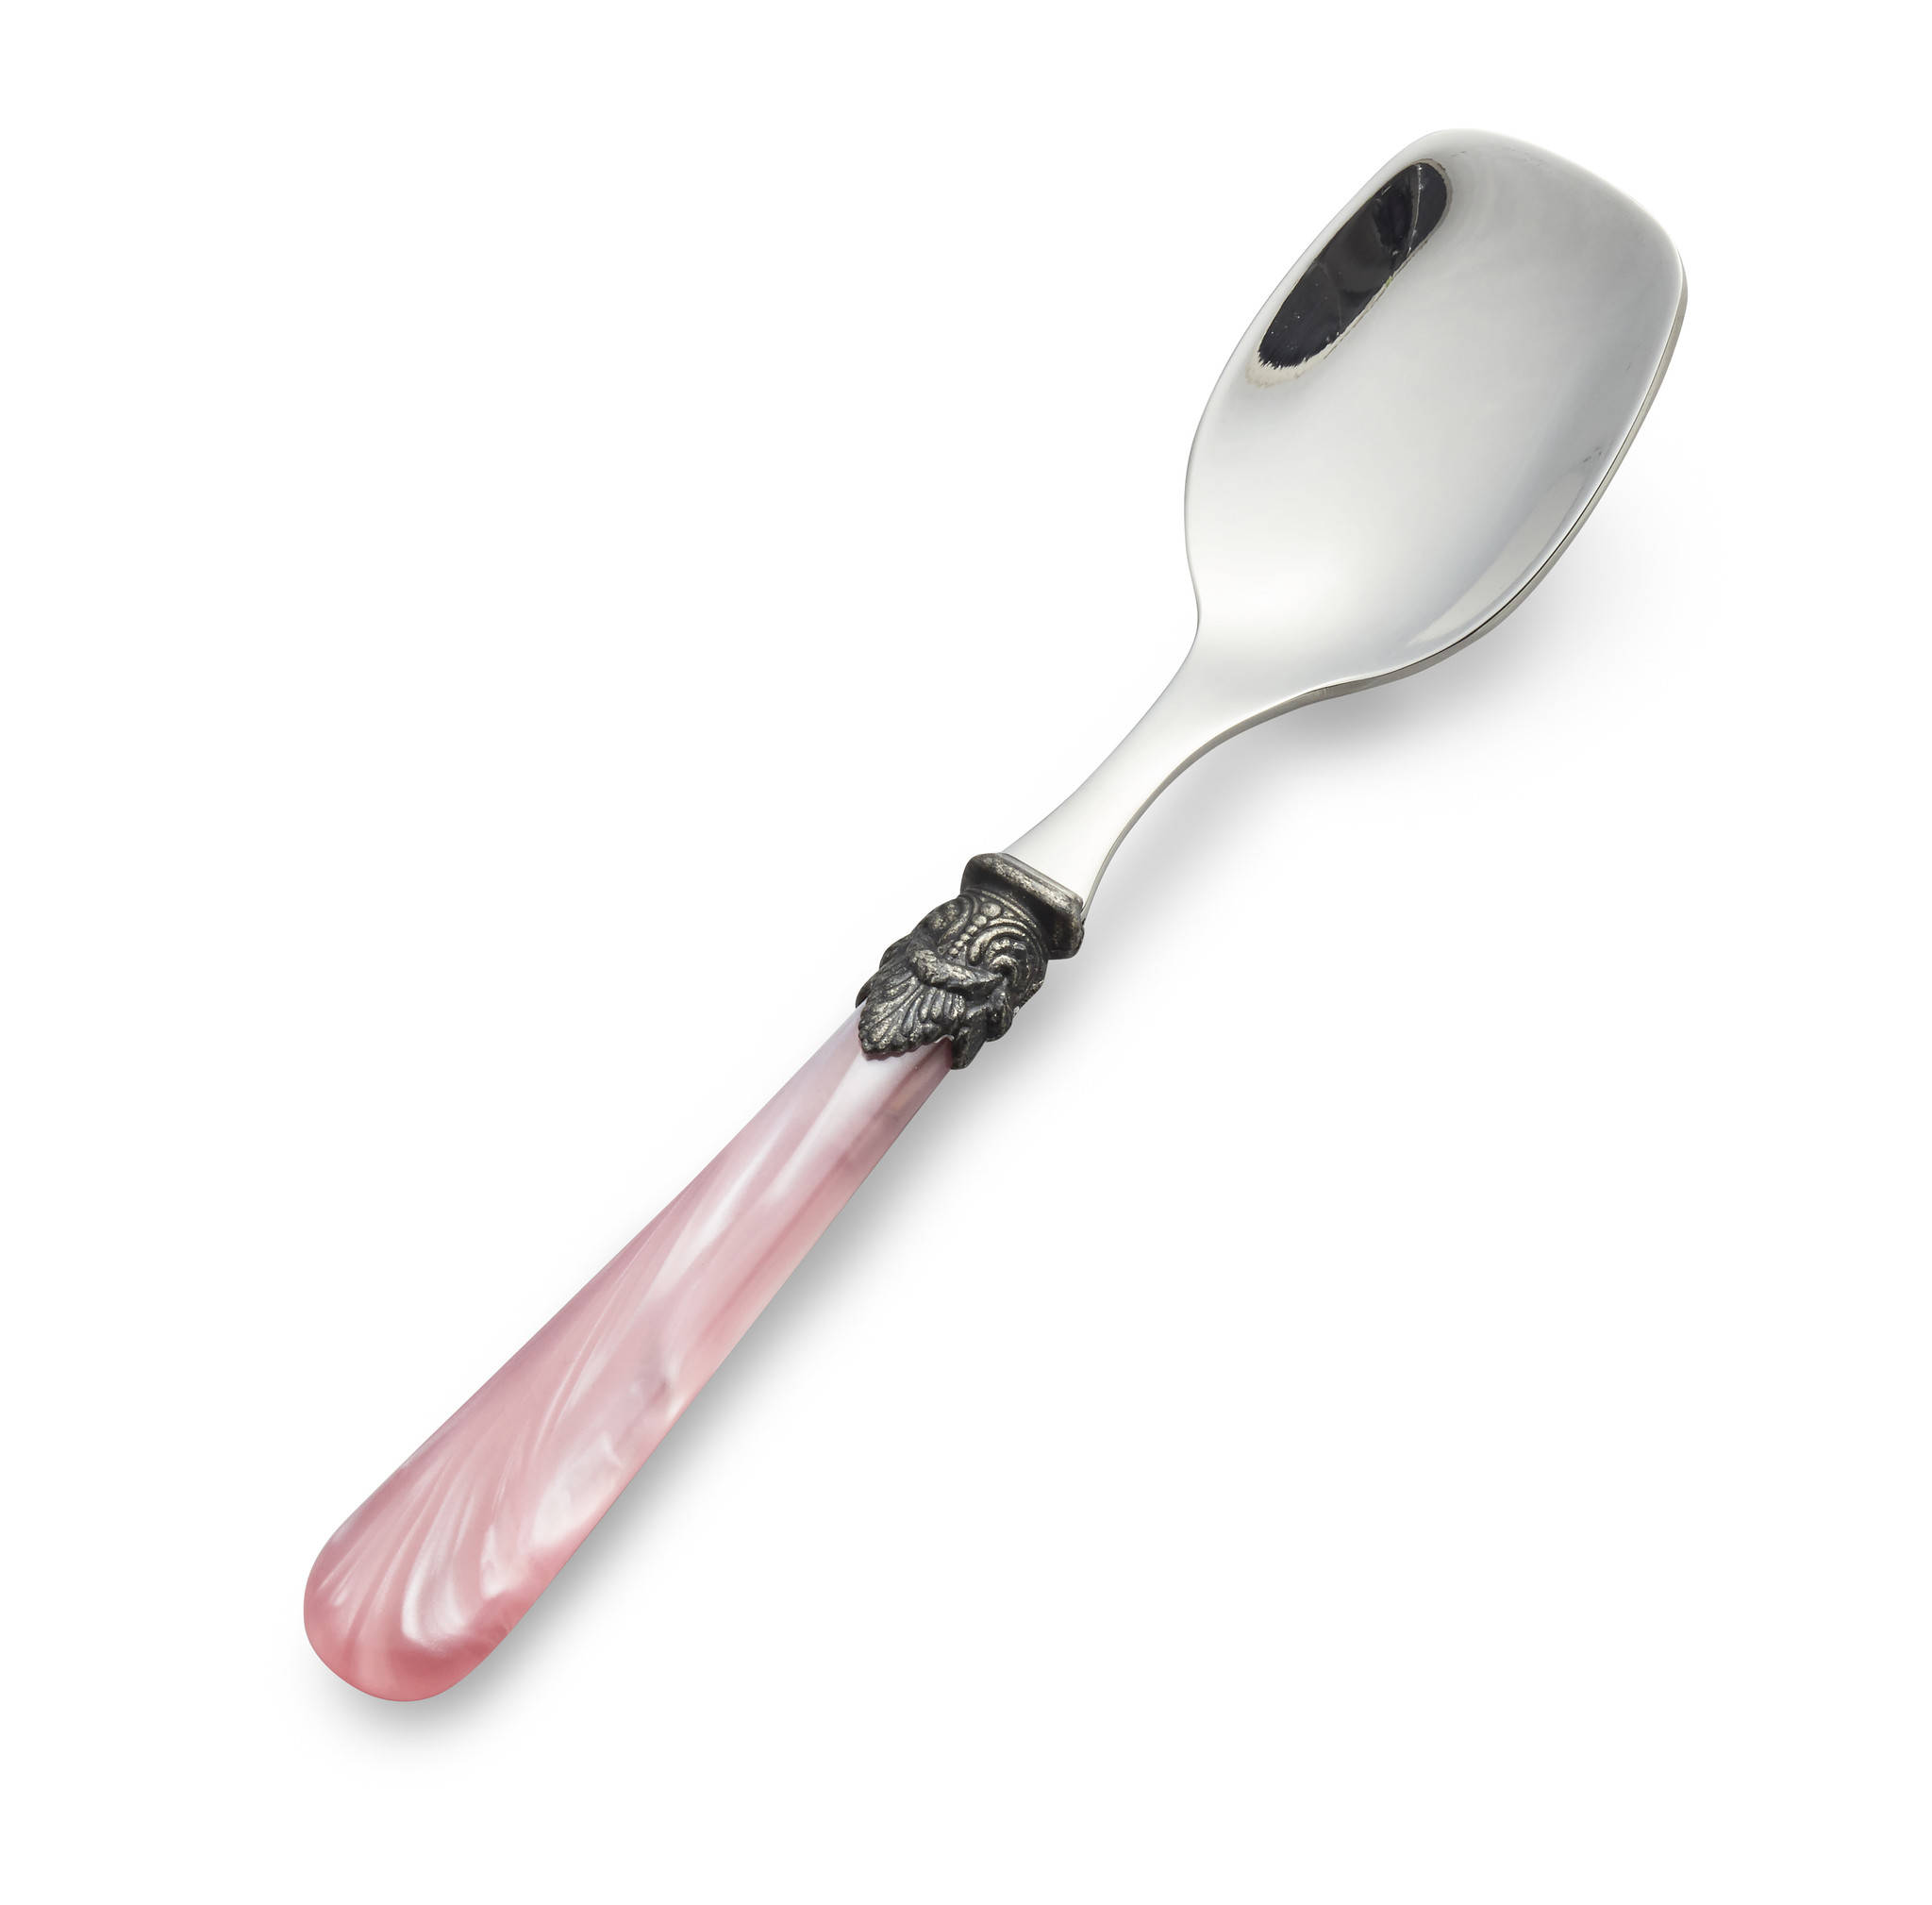 ice spoon